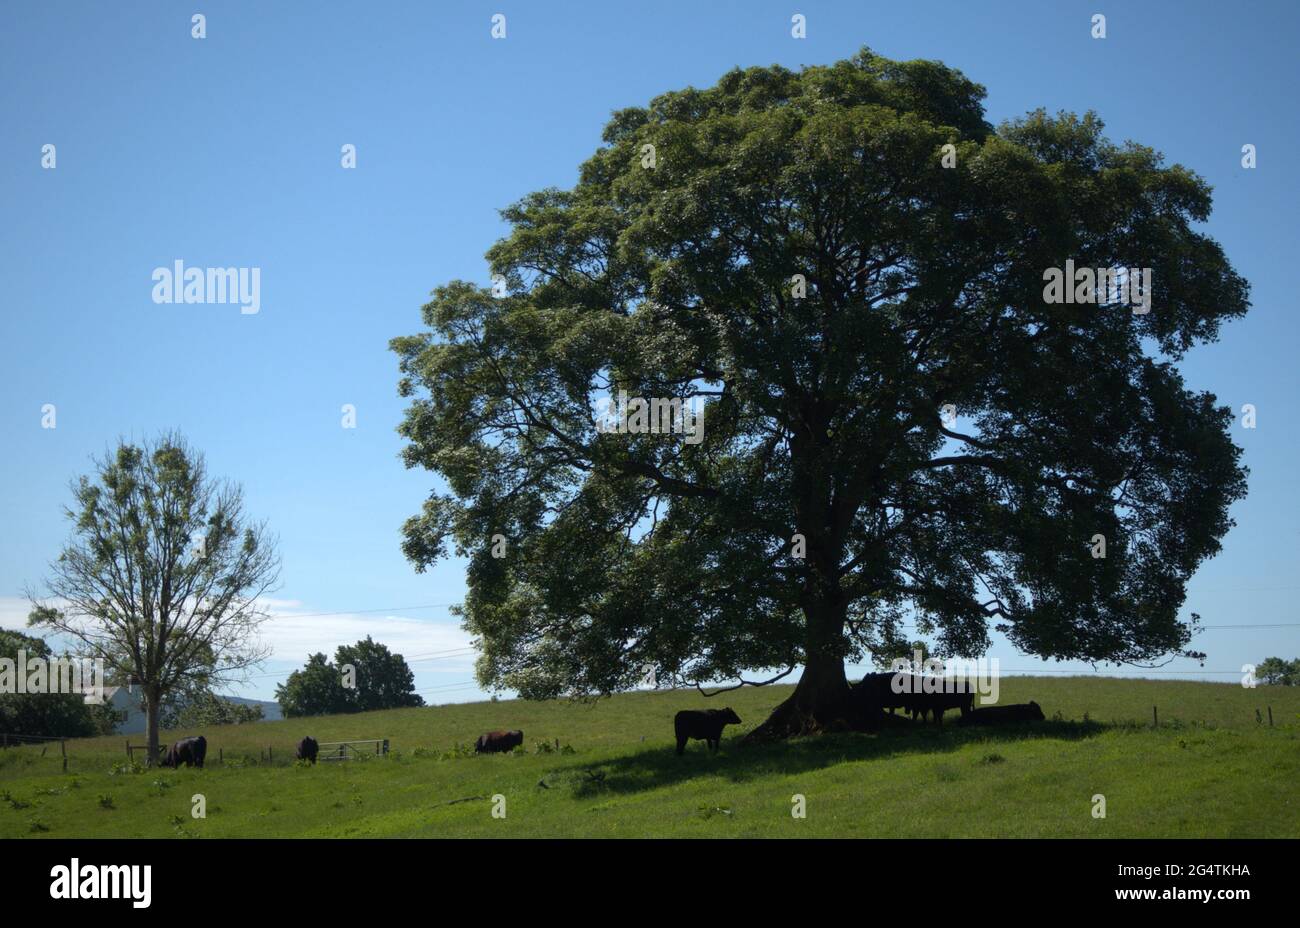 Arbre de forme traditionnelle sur le paysage de Cheshire fournissant un abri pour les jeunes taureaux noirs Banque D'Images